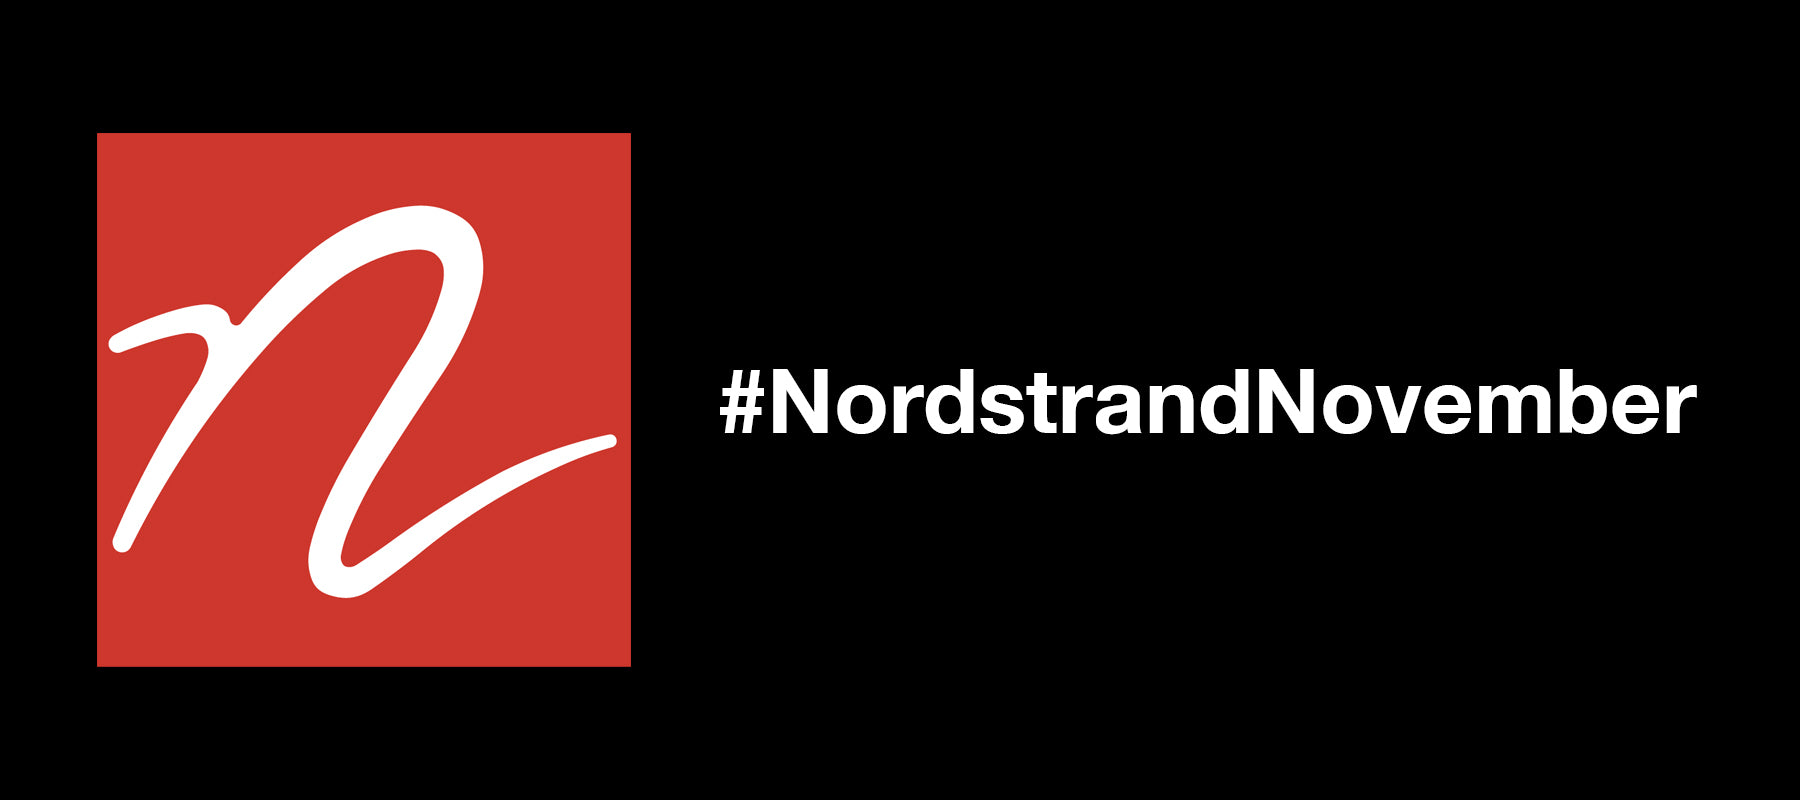 #NordstrandNovember Sweeps is here!